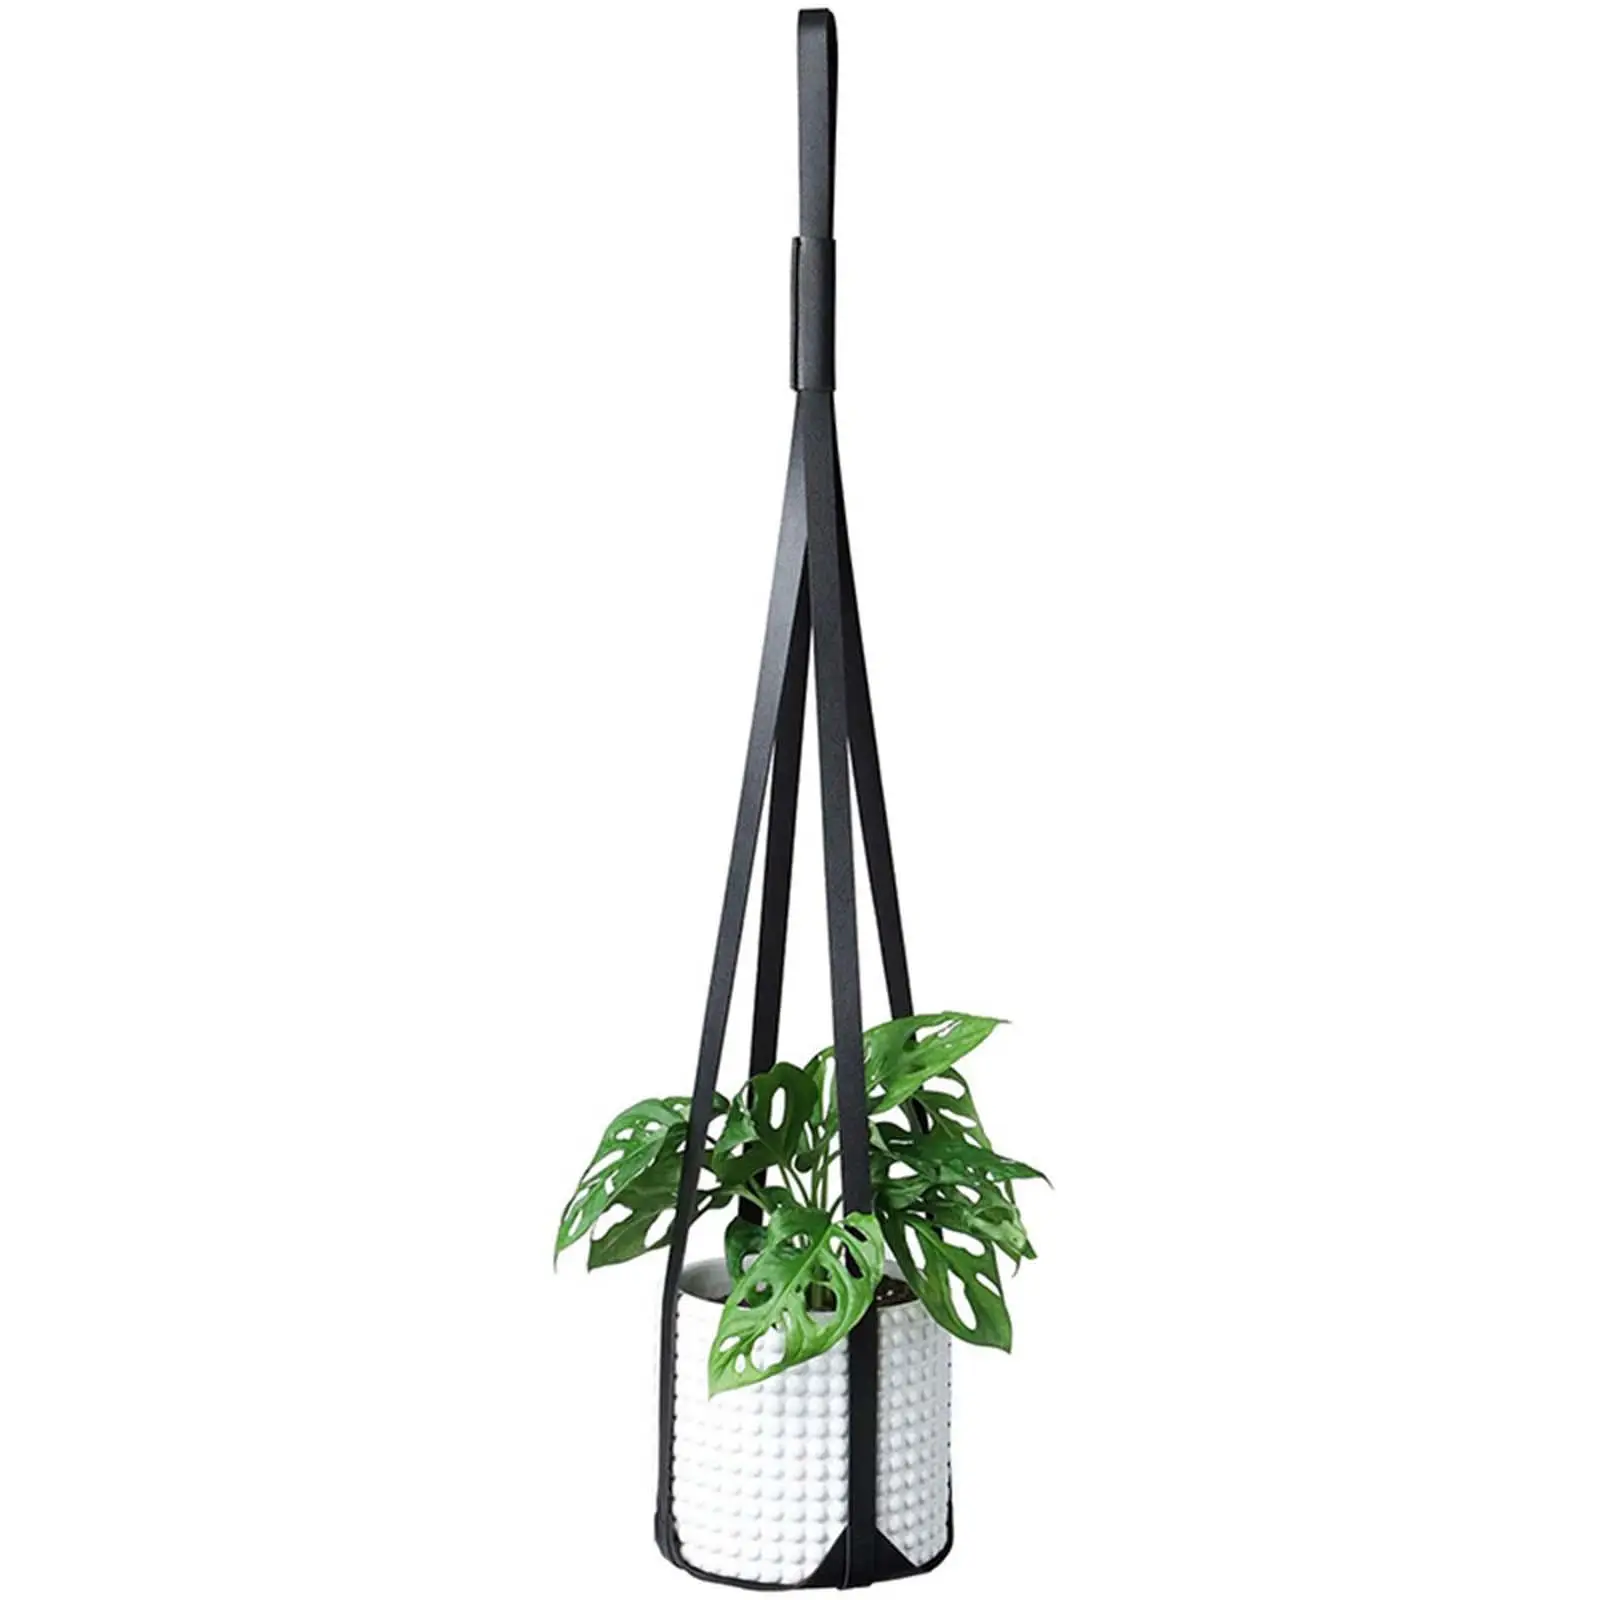 Hanging Planter Holder Rope Modern Plant Pots Holder Flower Basket Holder for Ceiling Garden Outdoor Outdoor Patio Decoration